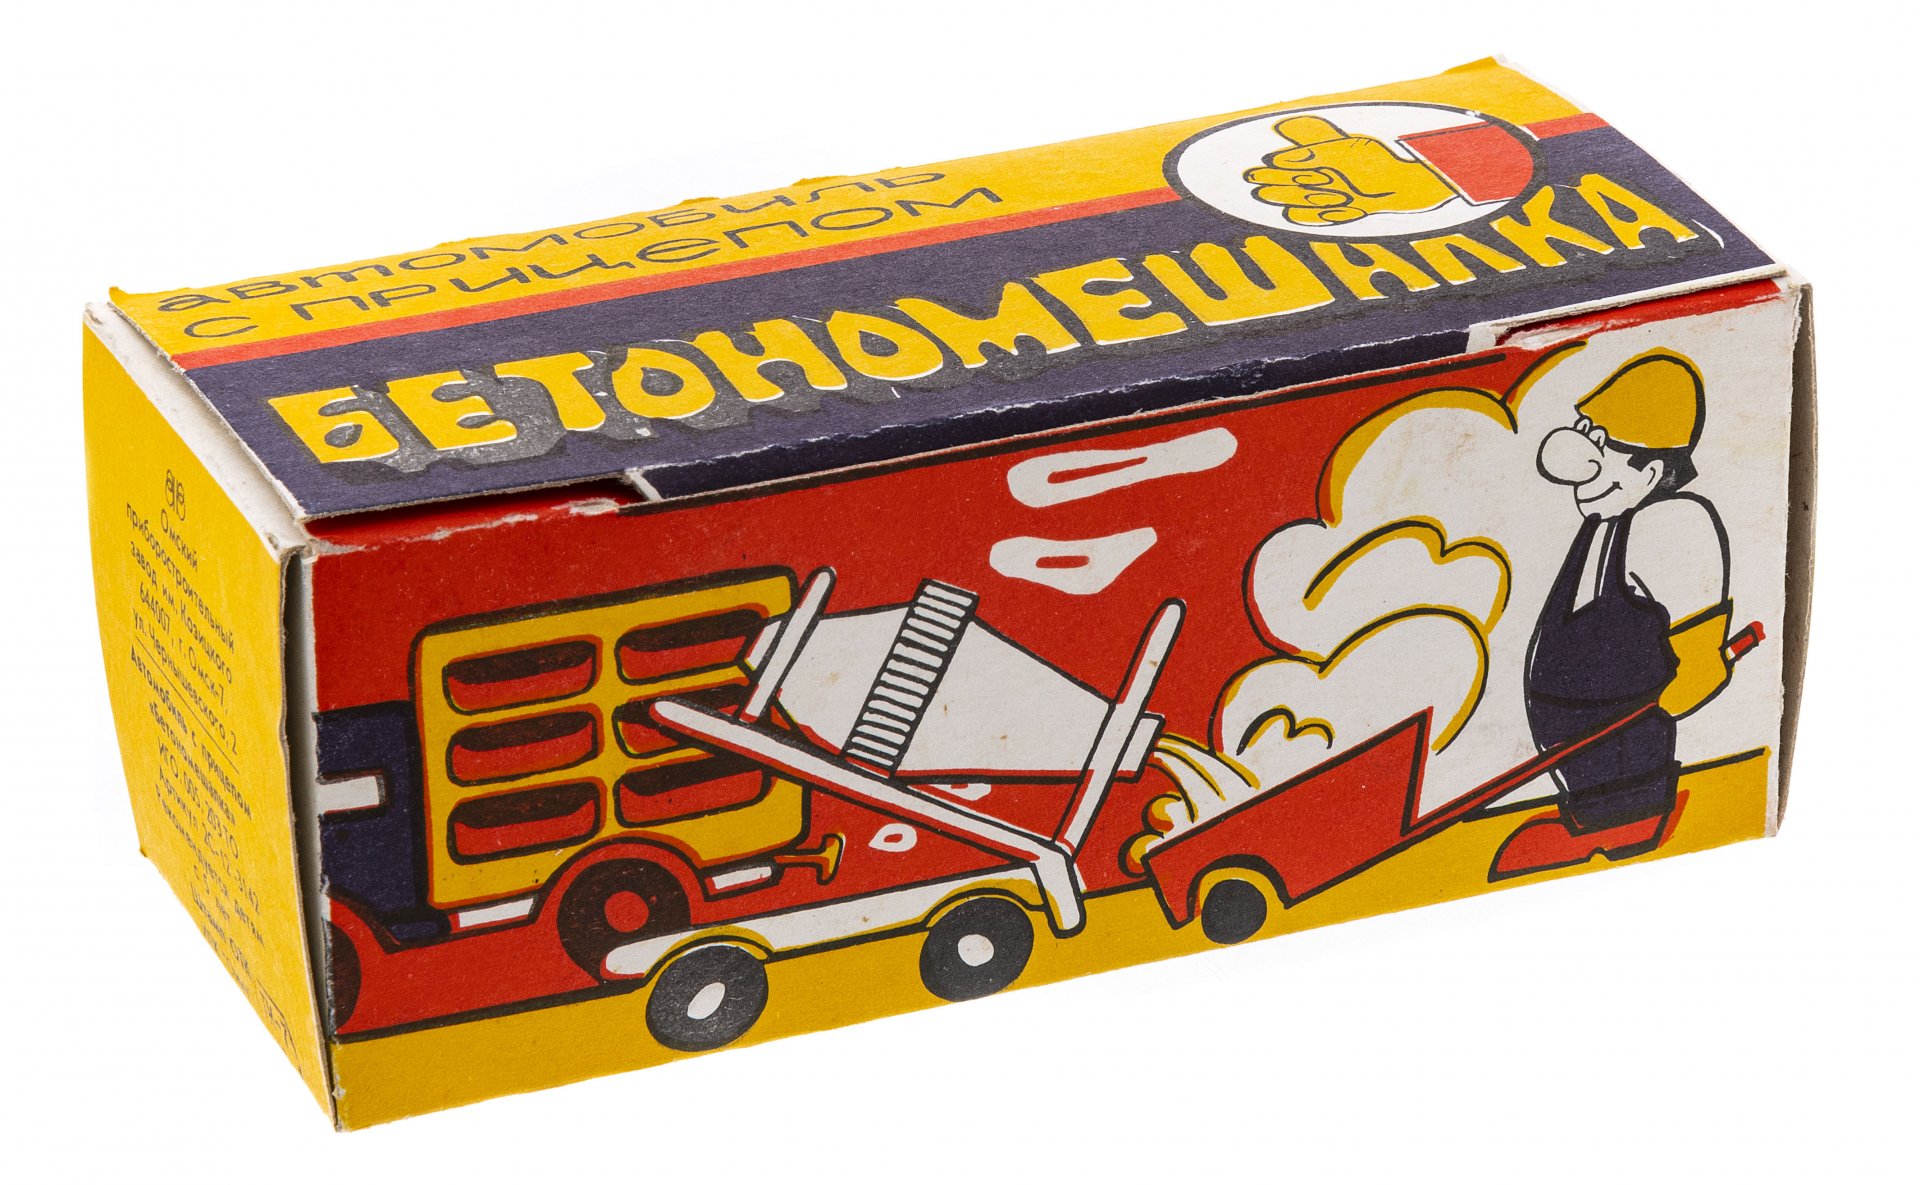 Коробка от игрушка "Автомобиль с прицепом бетономешалка", 1980-1990 гг.